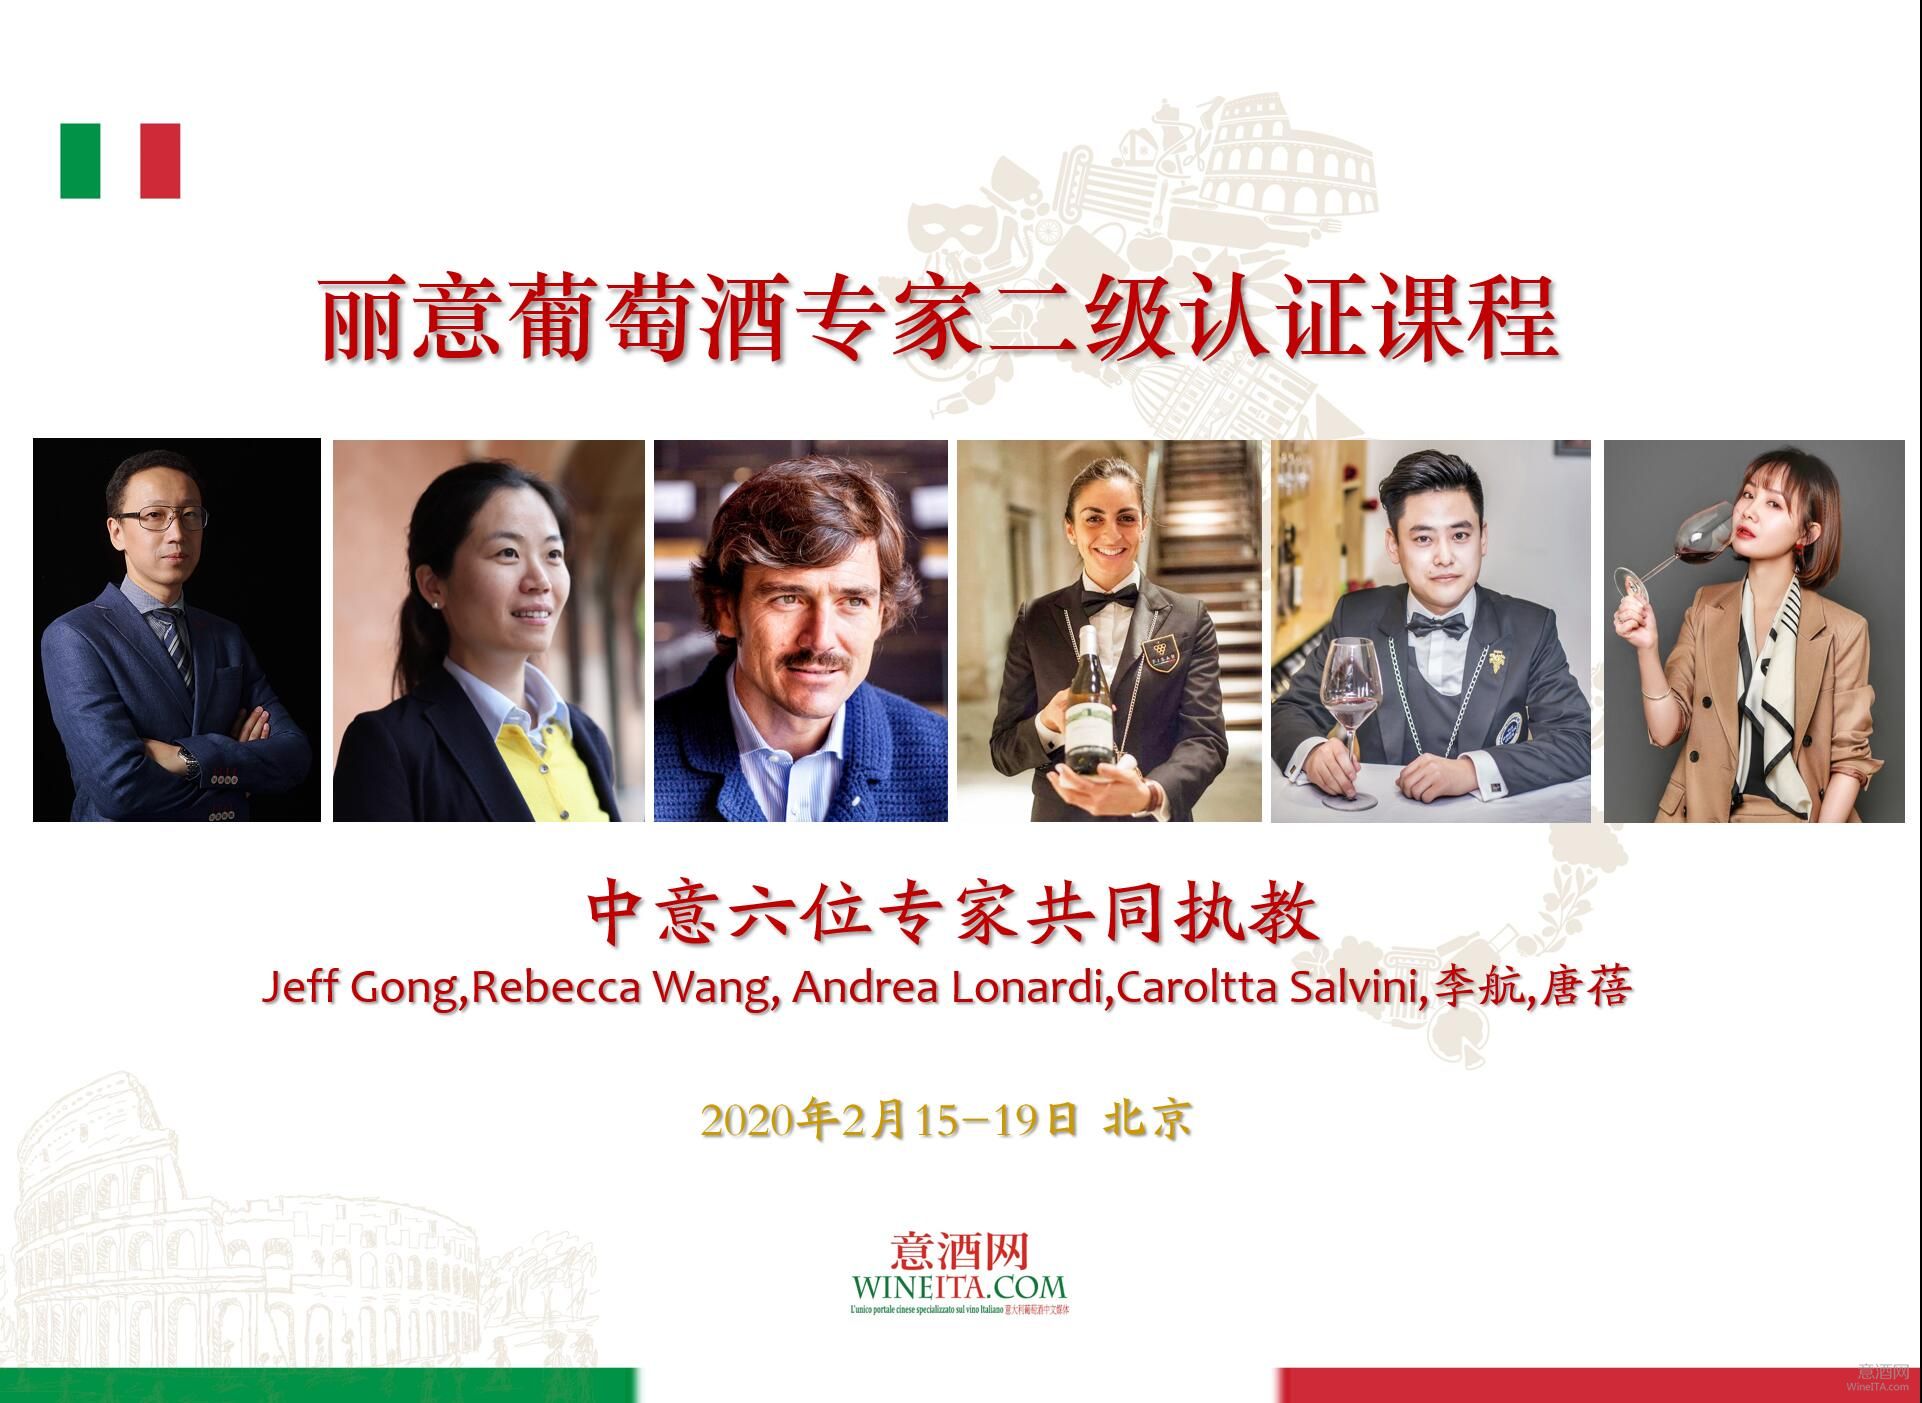 中意6位专家共同执教 丽意葡萄酒专家二级认证课将于2月在北京举行